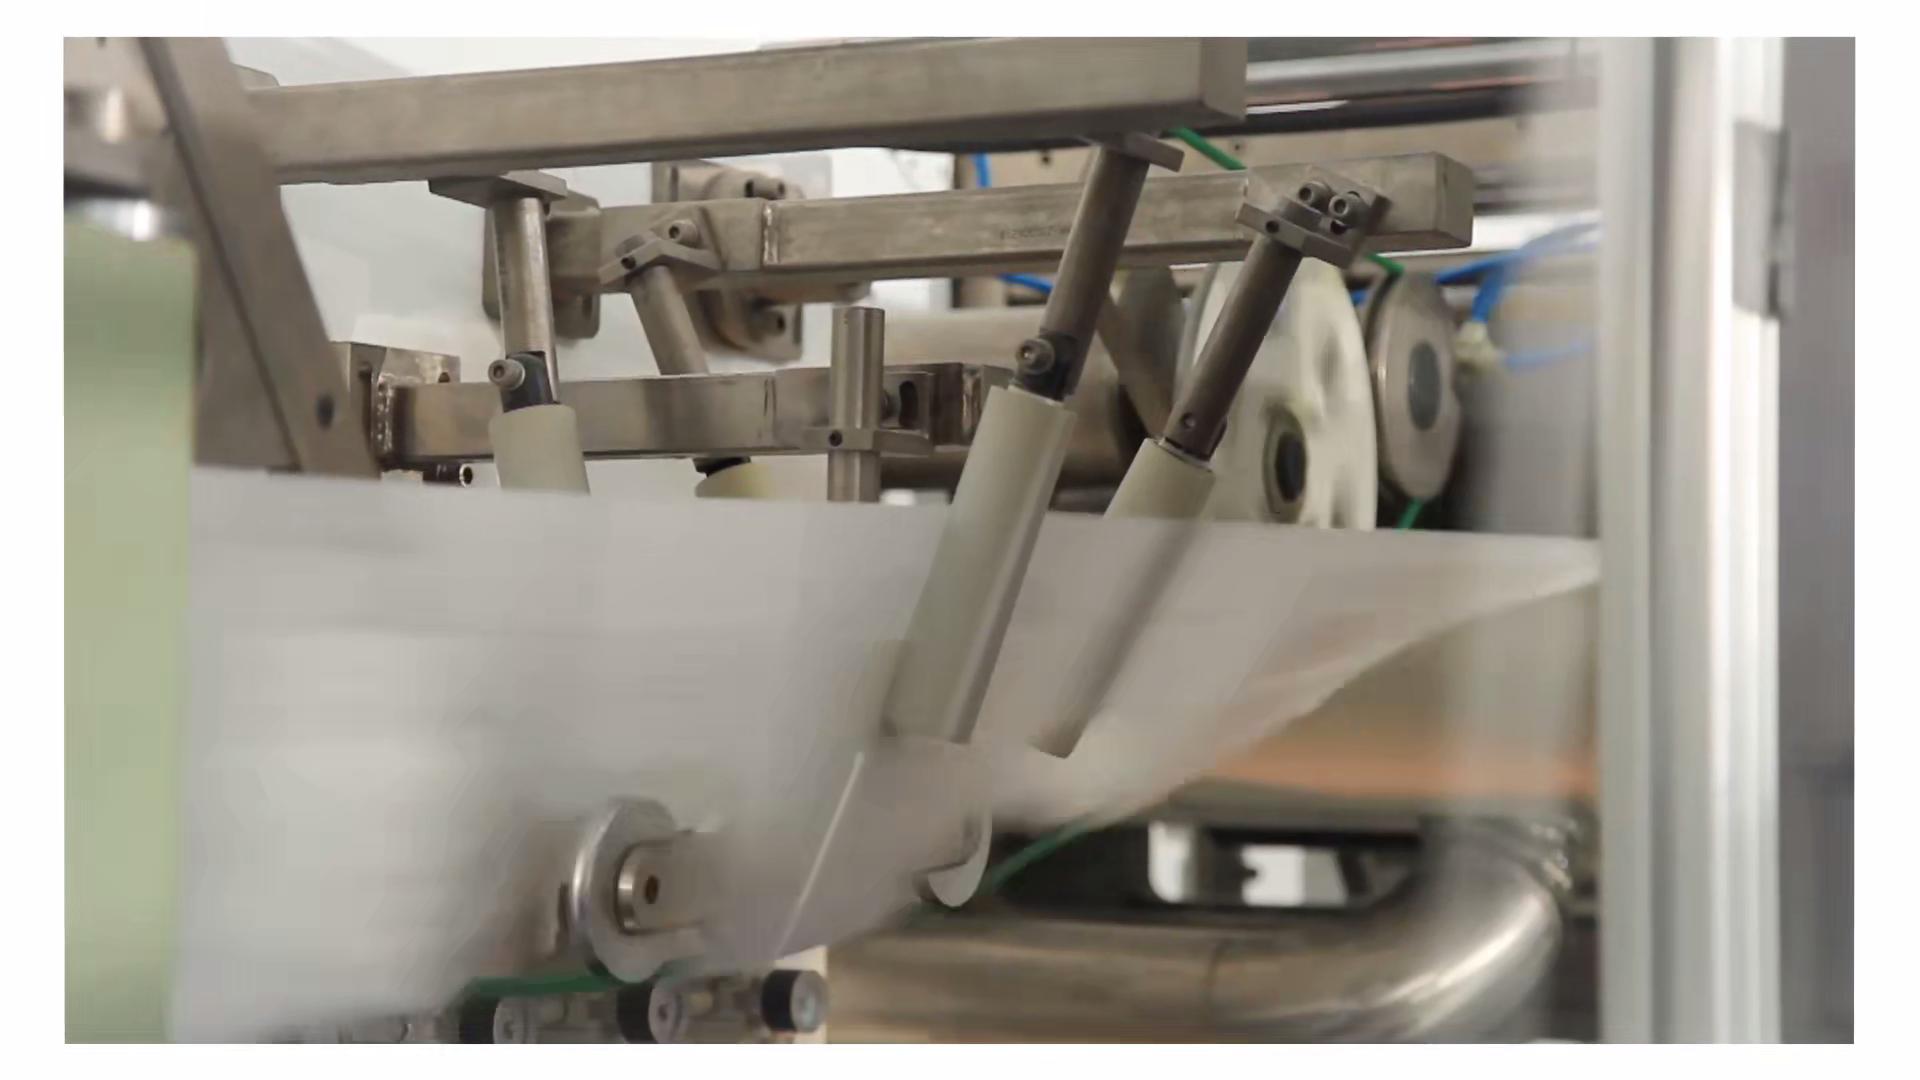 Diaper making machine in Argentina